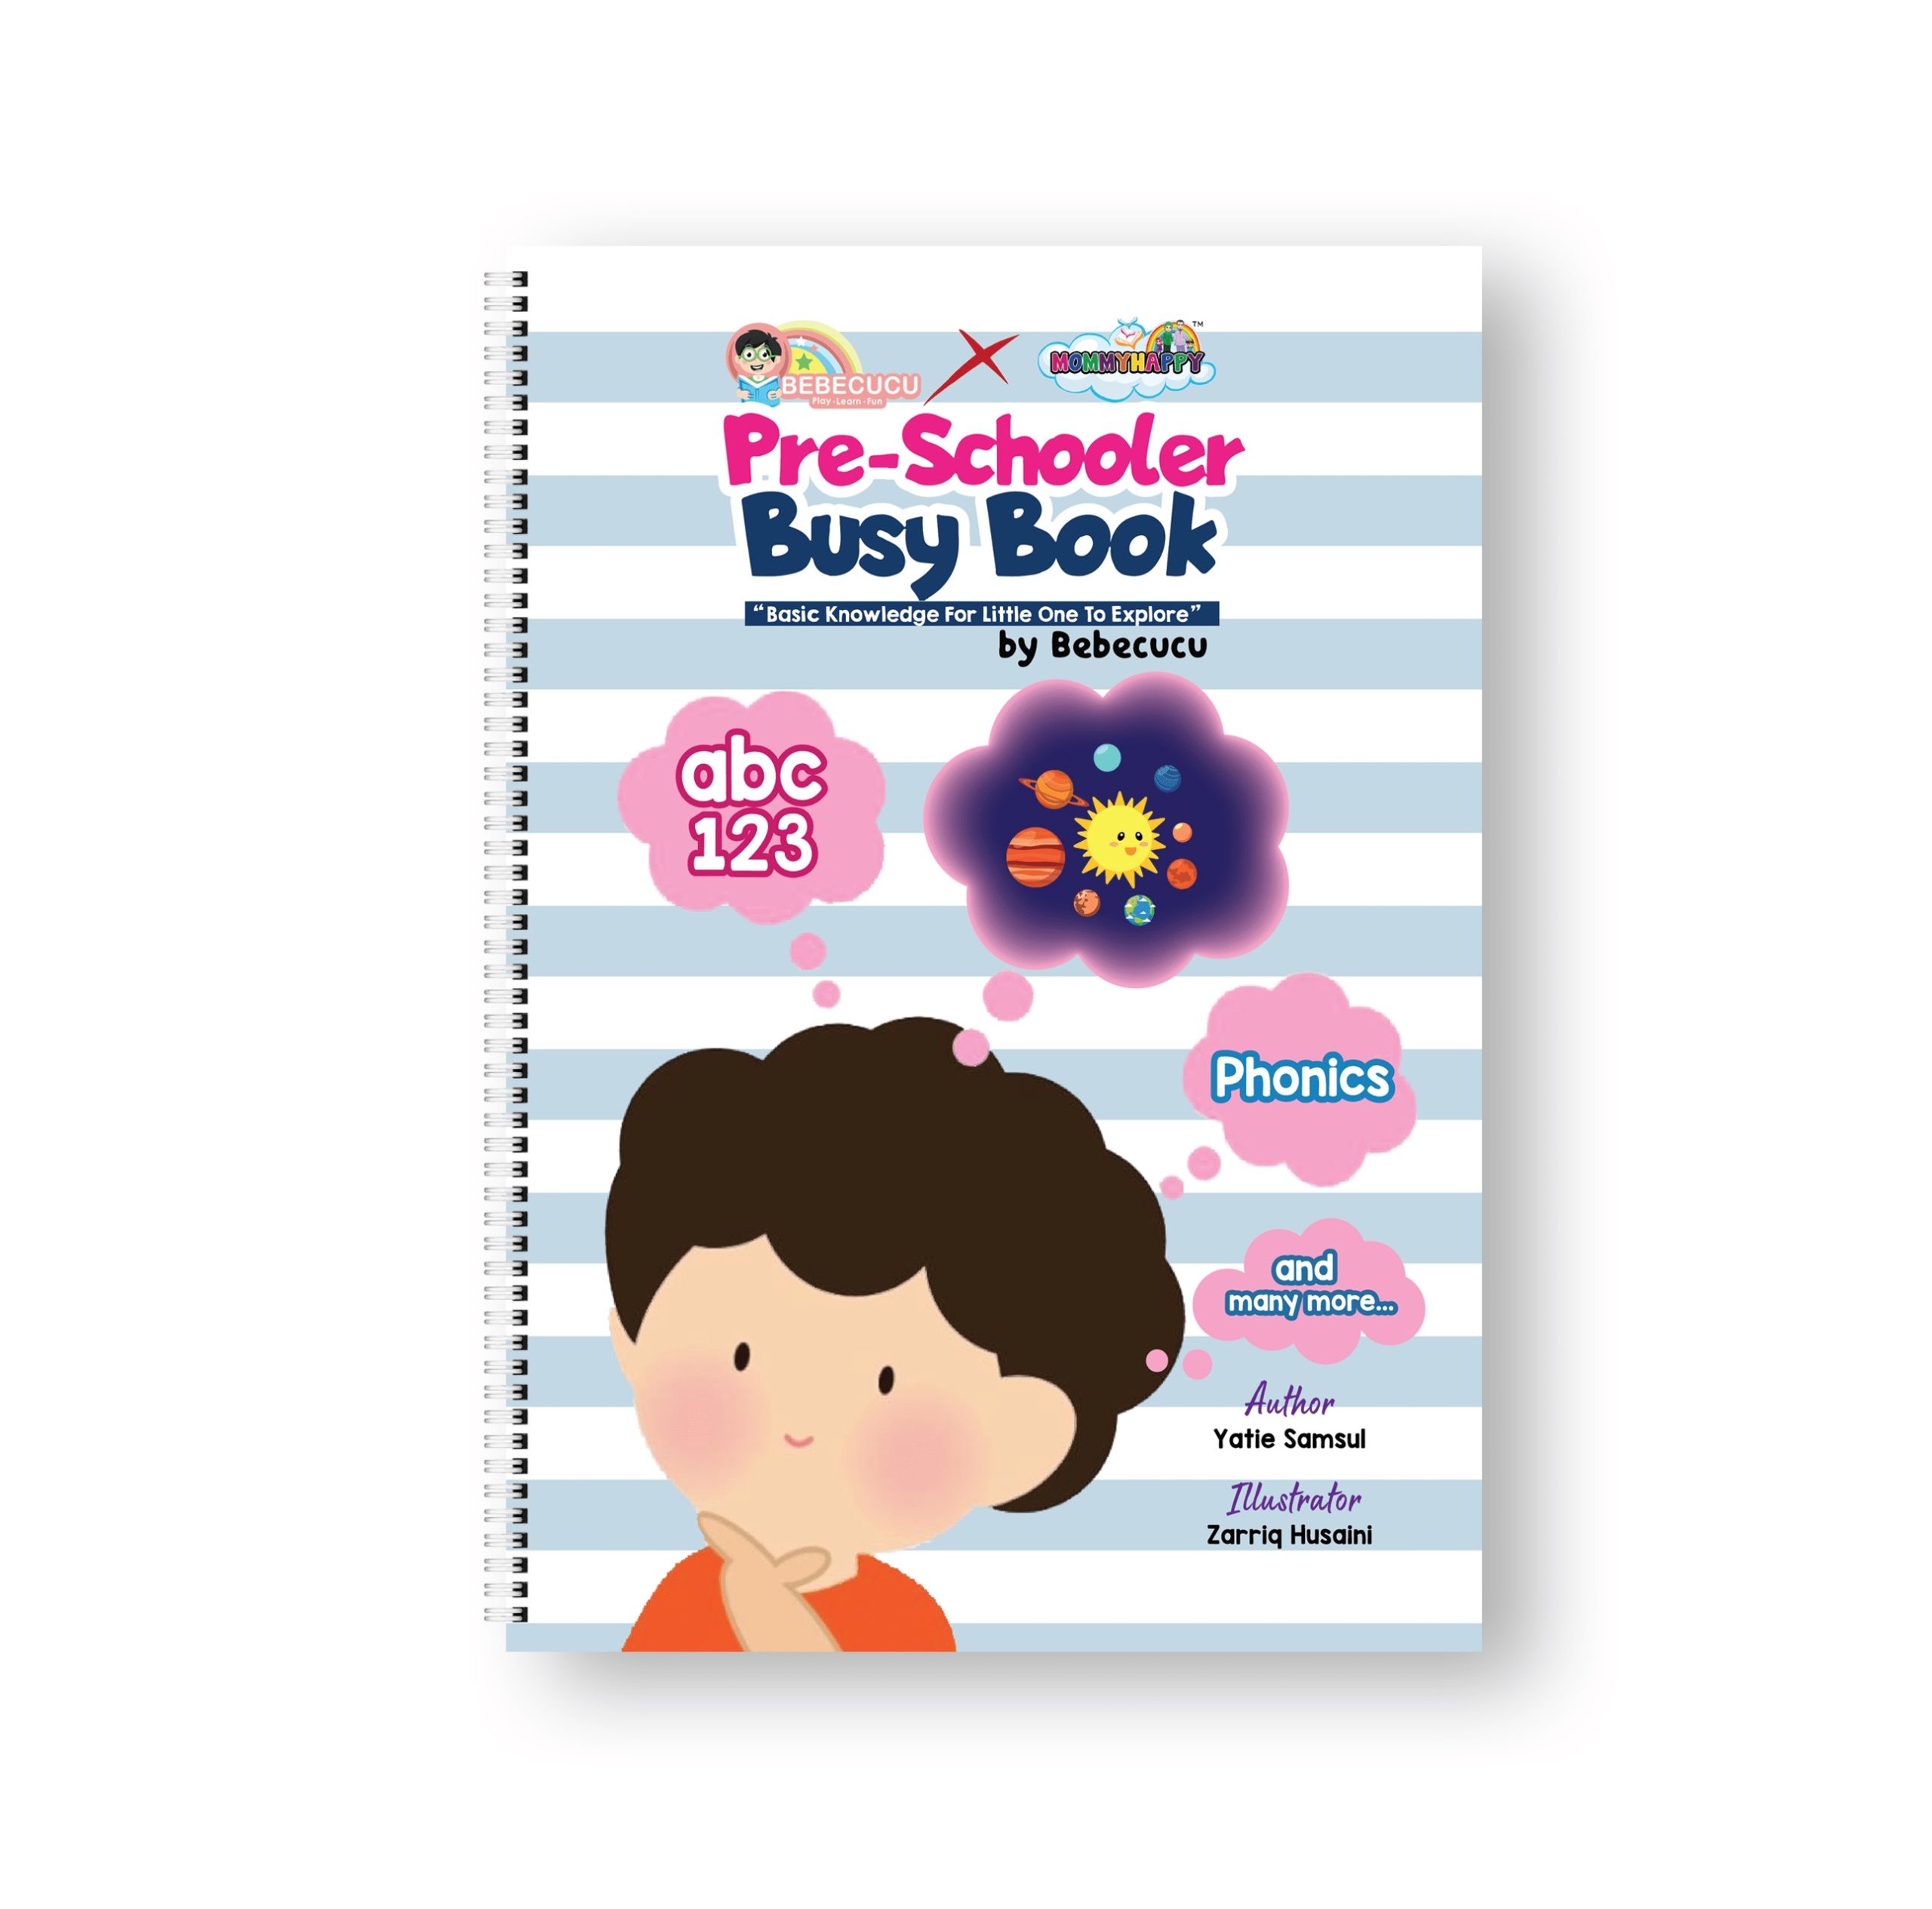 Pre-Schooler Busy Book